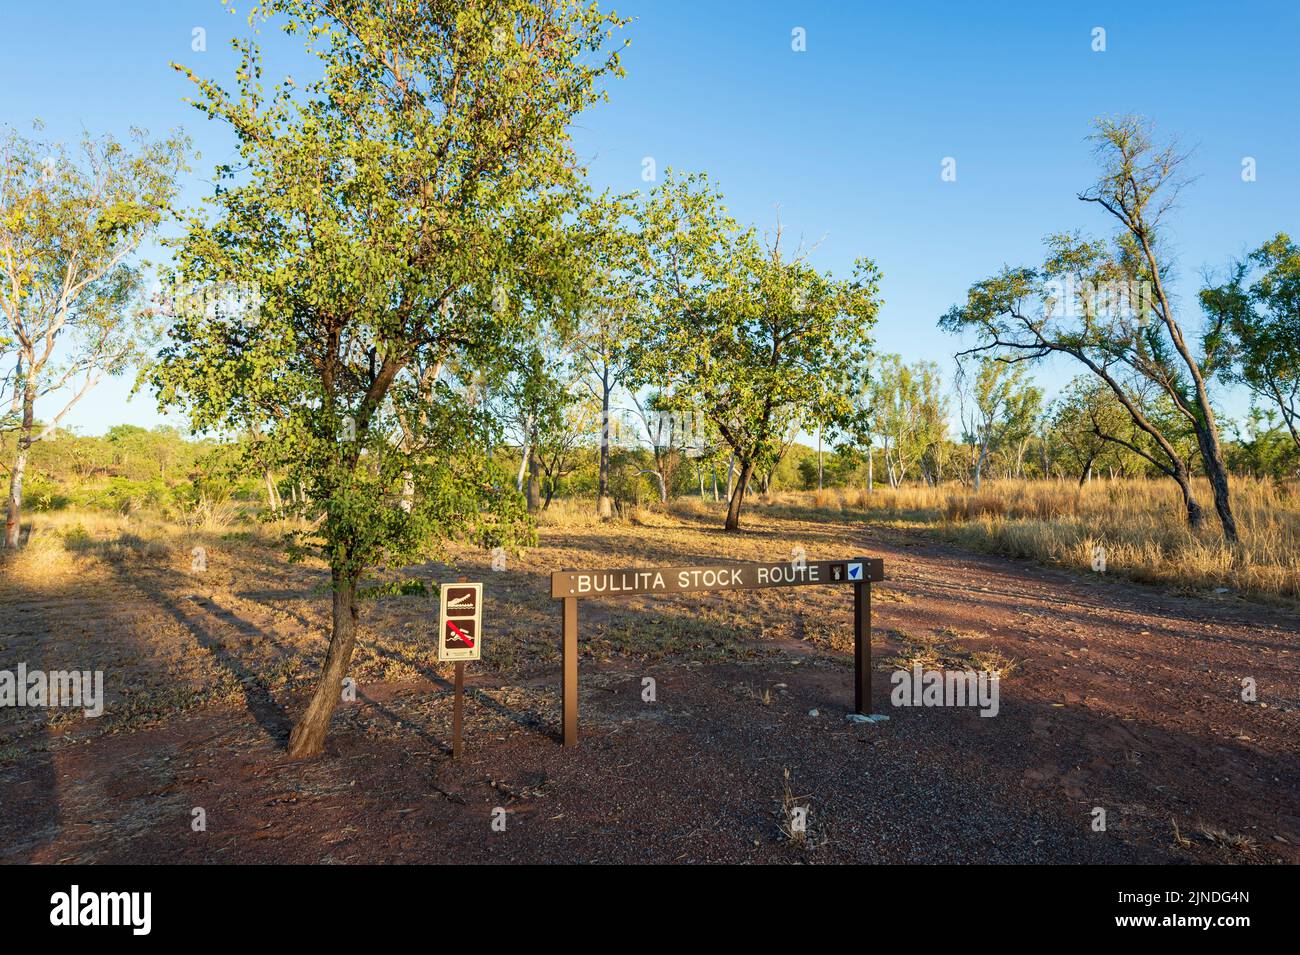 Segui le indicazioni per la Bullita Stock Route, una pista 4WD a Judbarra/Gregory National Park, Northern Territory, NT, Australia Foto Stock